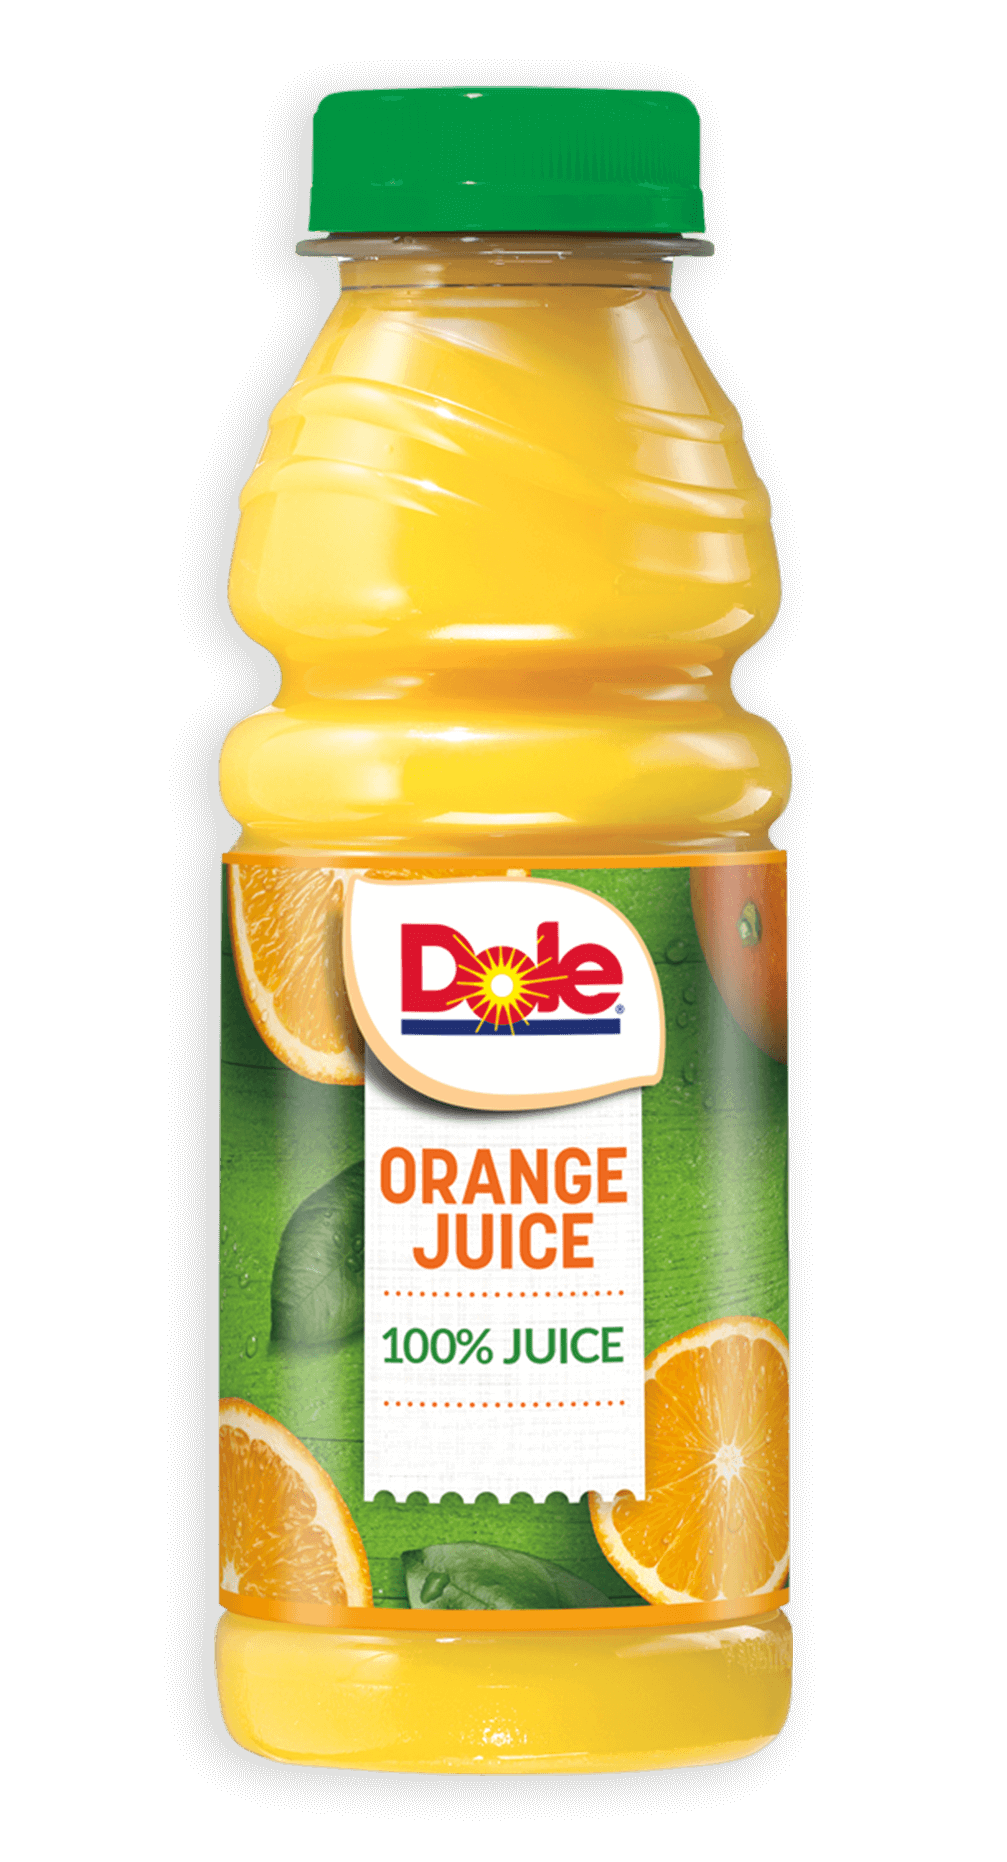 https://www.dolejuice.com/static/media/orange-juice.cebce77b.png